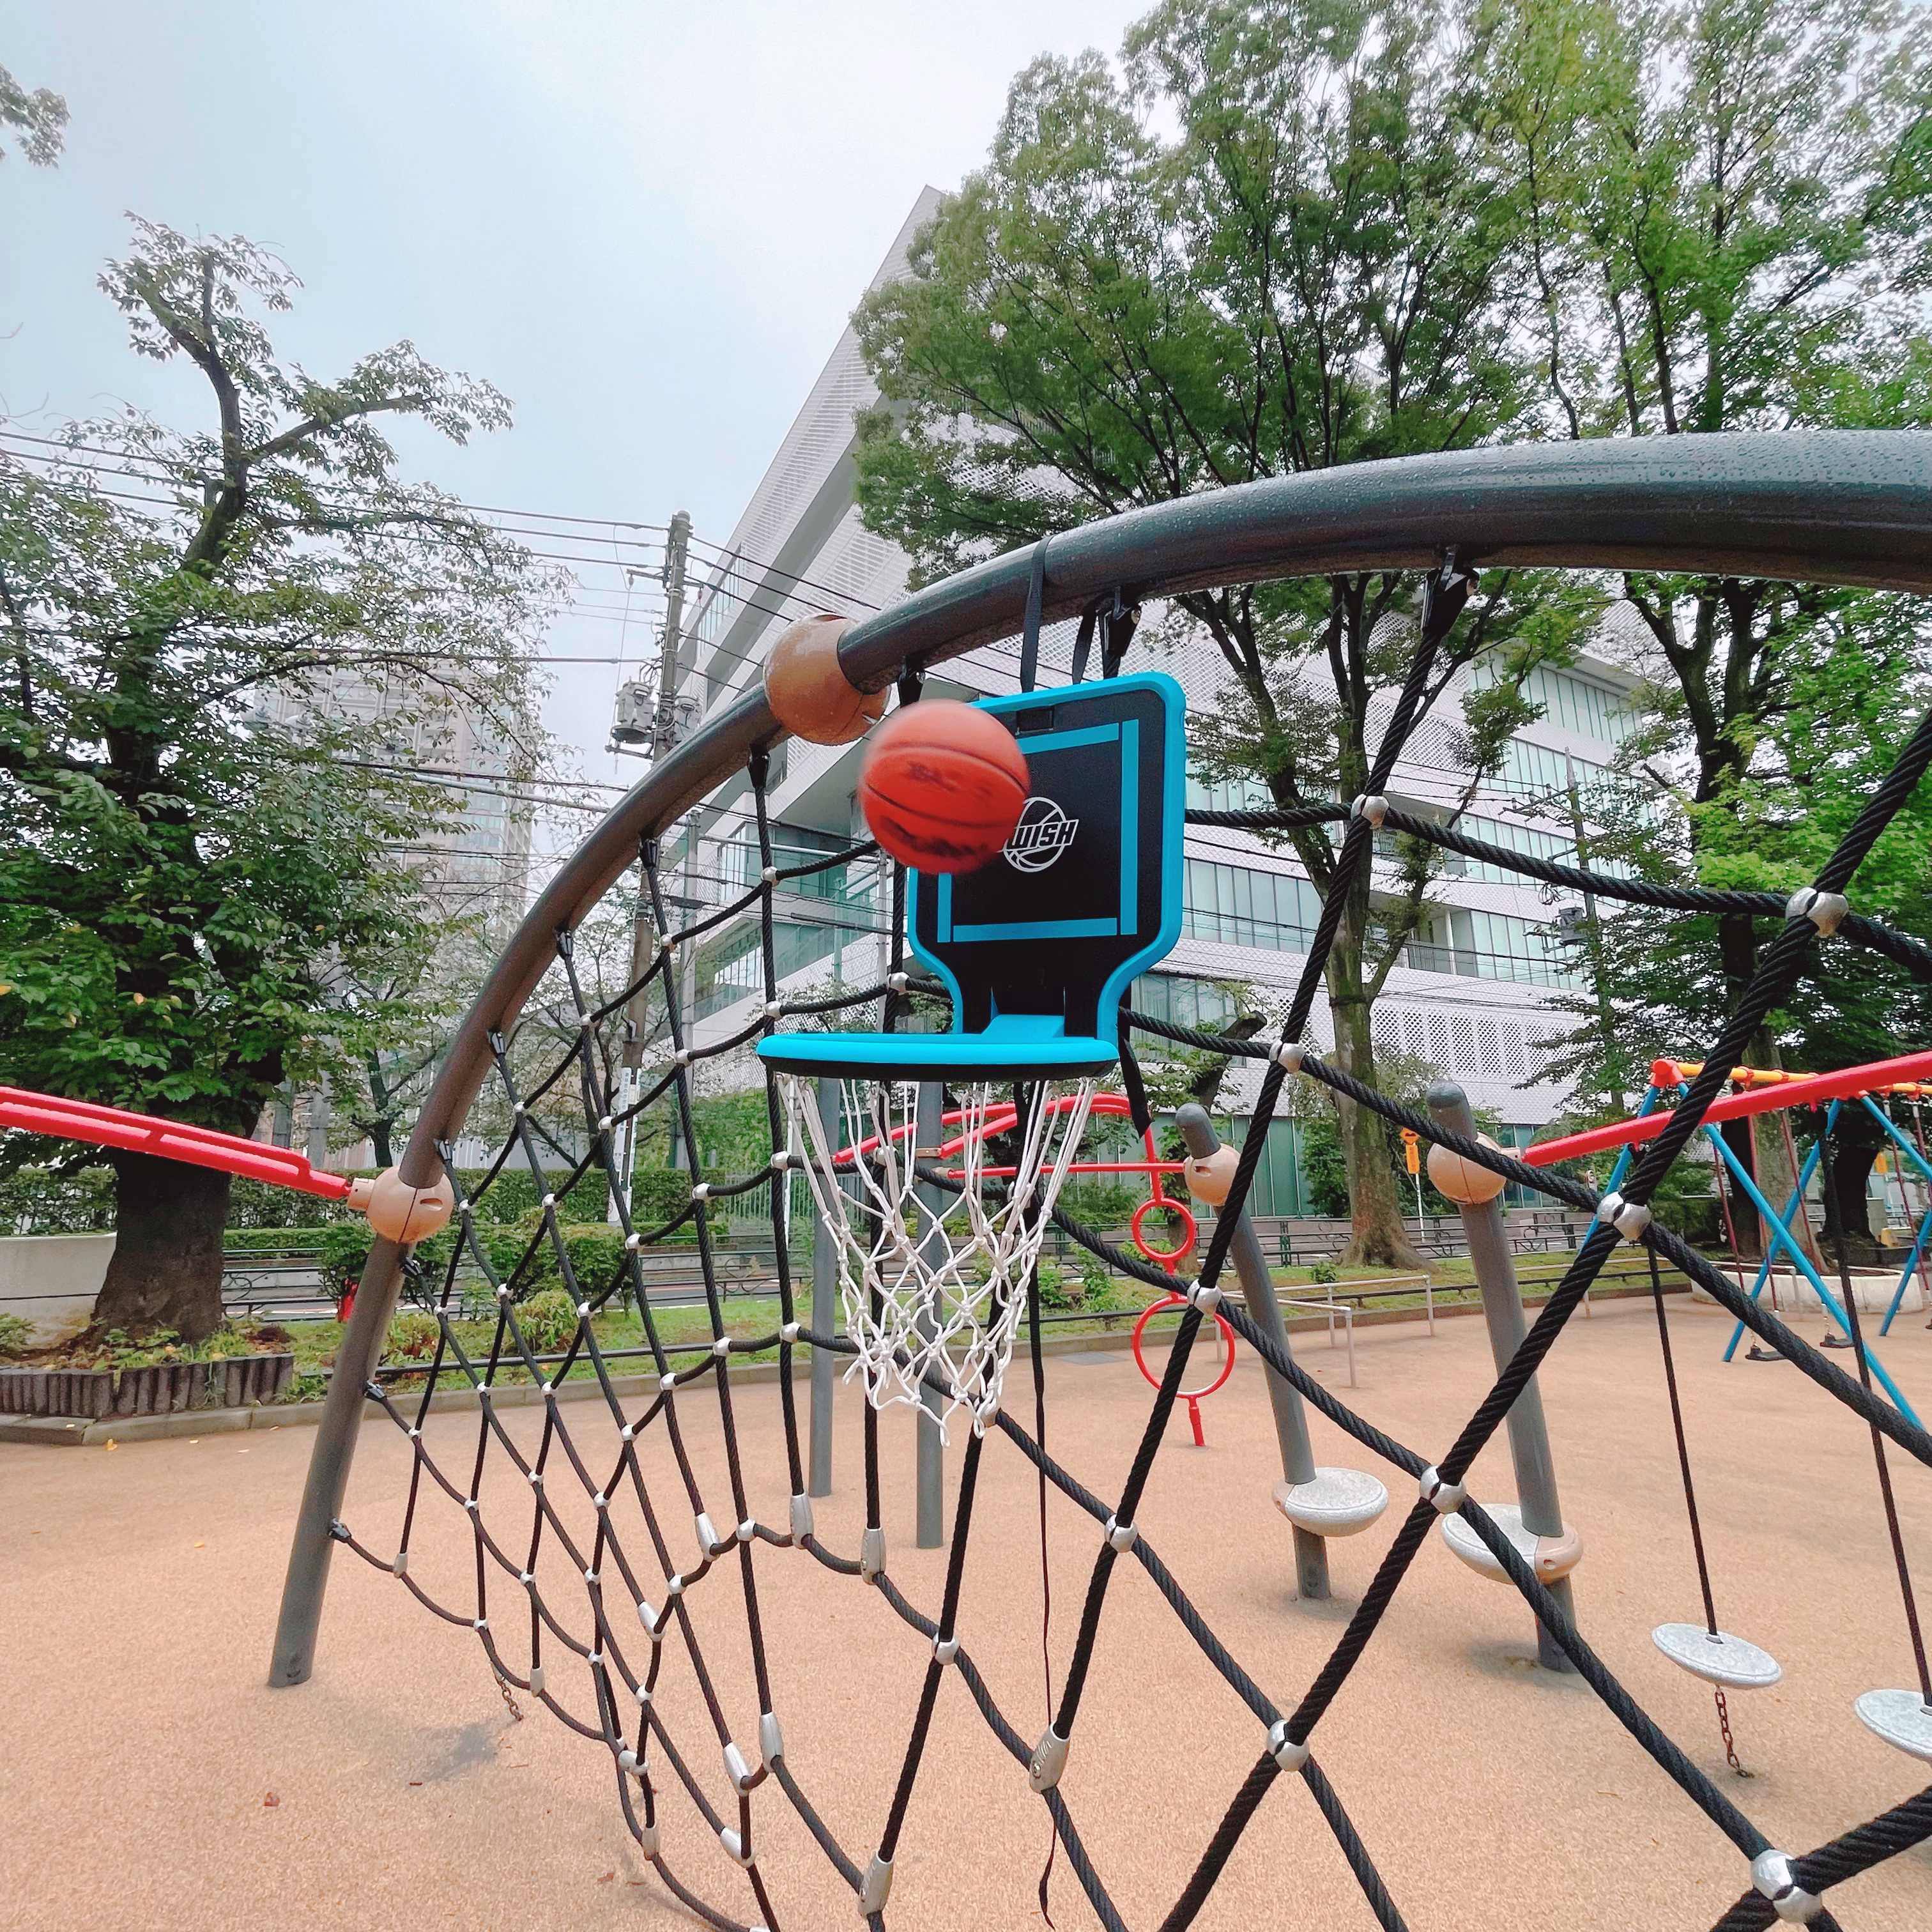 9120円 今季も再入荷 Swish ポータブル バスケットゴール 持ち運び 背負える 高さ調節可能 子供から大人まで対応 組み立て不要 様々な場所に取付けできる 公園